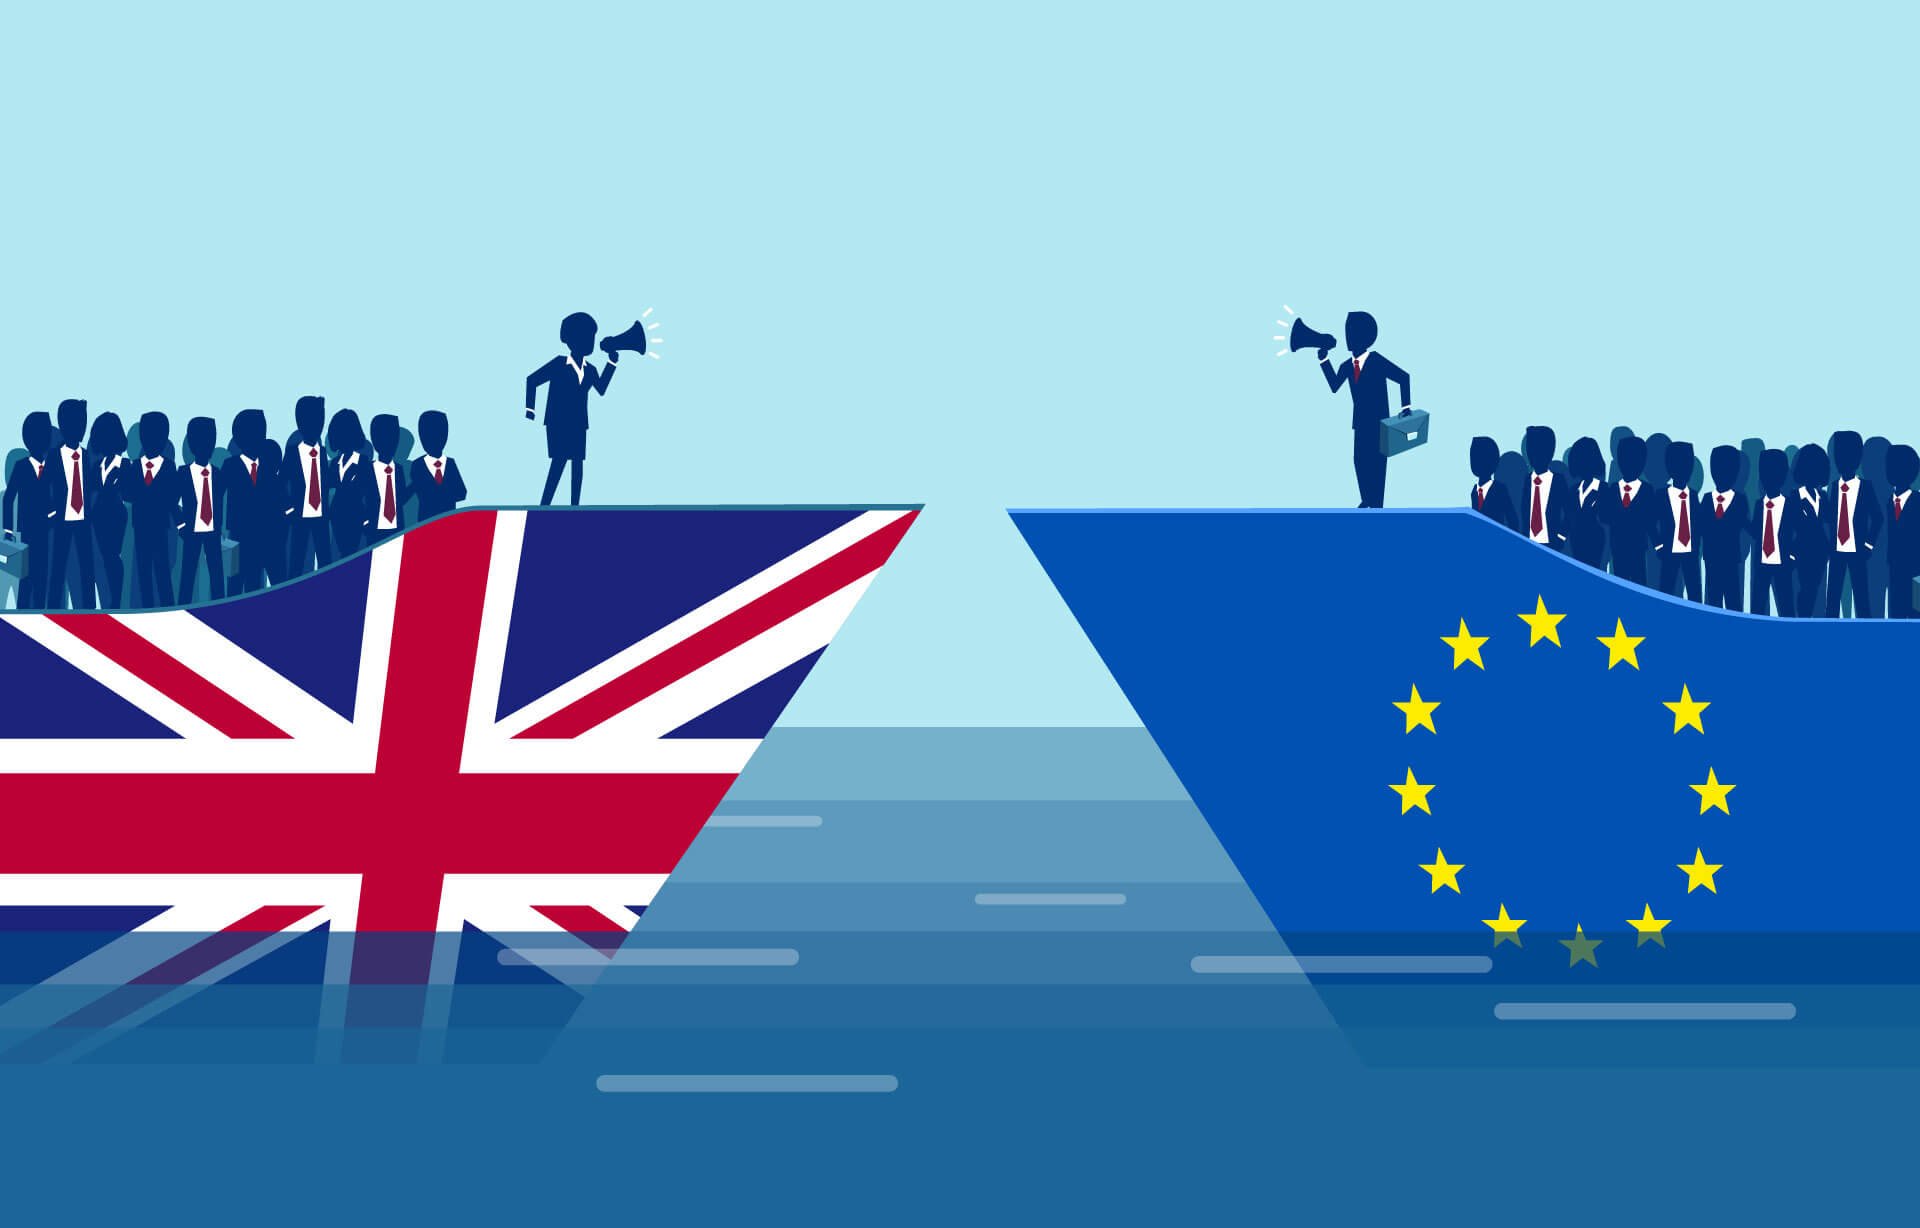  Cinci ani de la Brexit: Cei mai mulţi britanici vor înapoi în UE